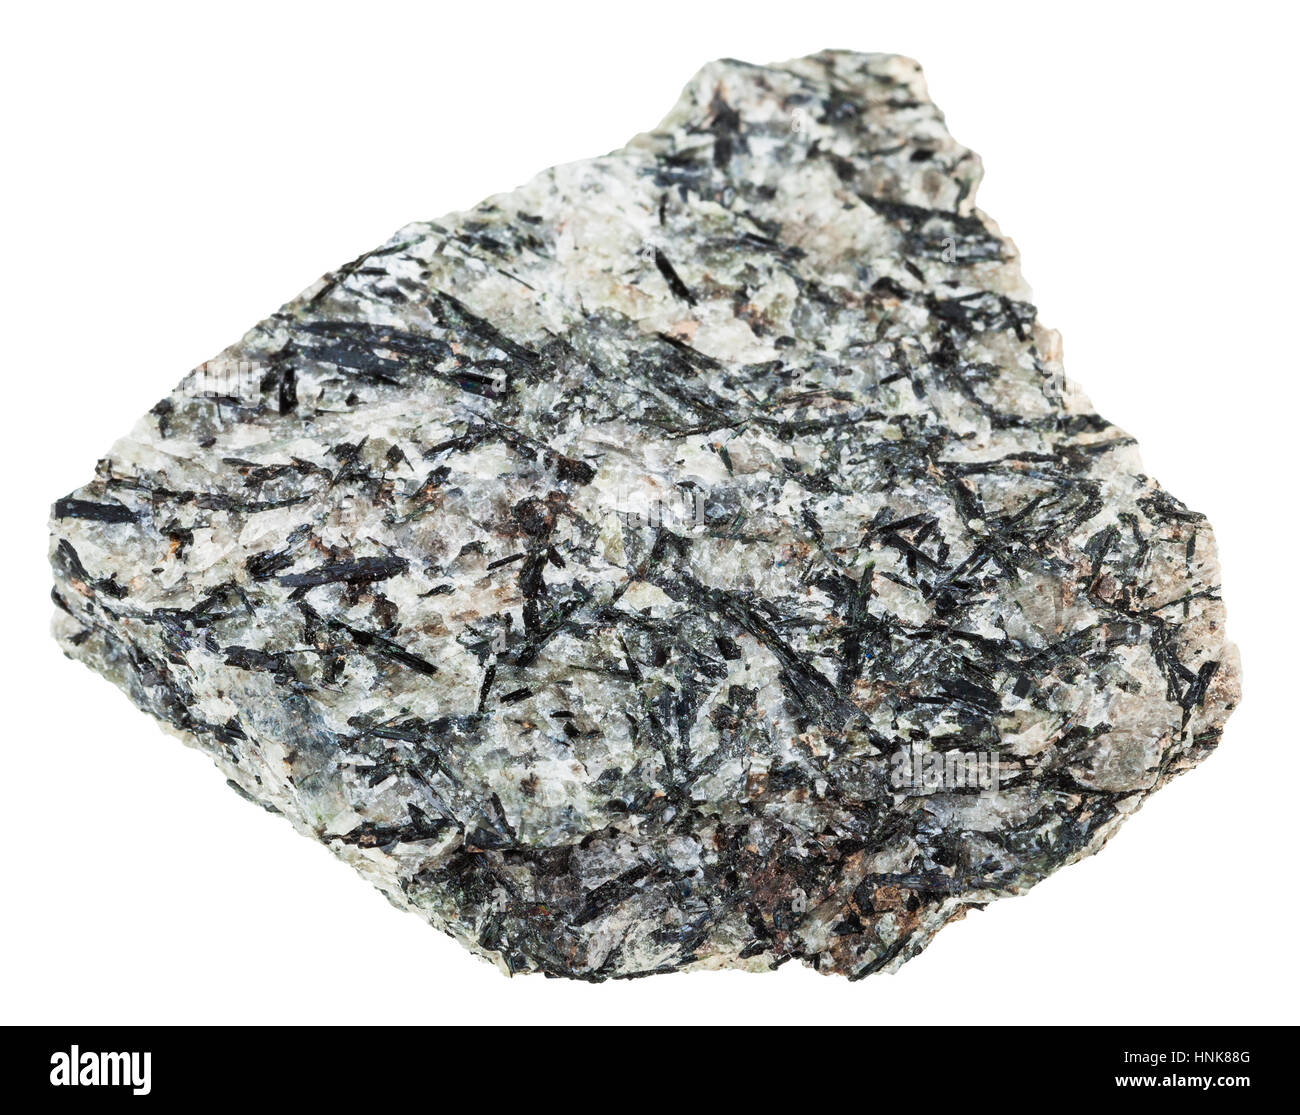 Makro-Aufnahmen der geologischen Sammlung Mineral - Exemplar von Lujaurite (Lujavrite, Nepheline Syenit) Stein isoliert auf weißem Hintergrund Stockfoto